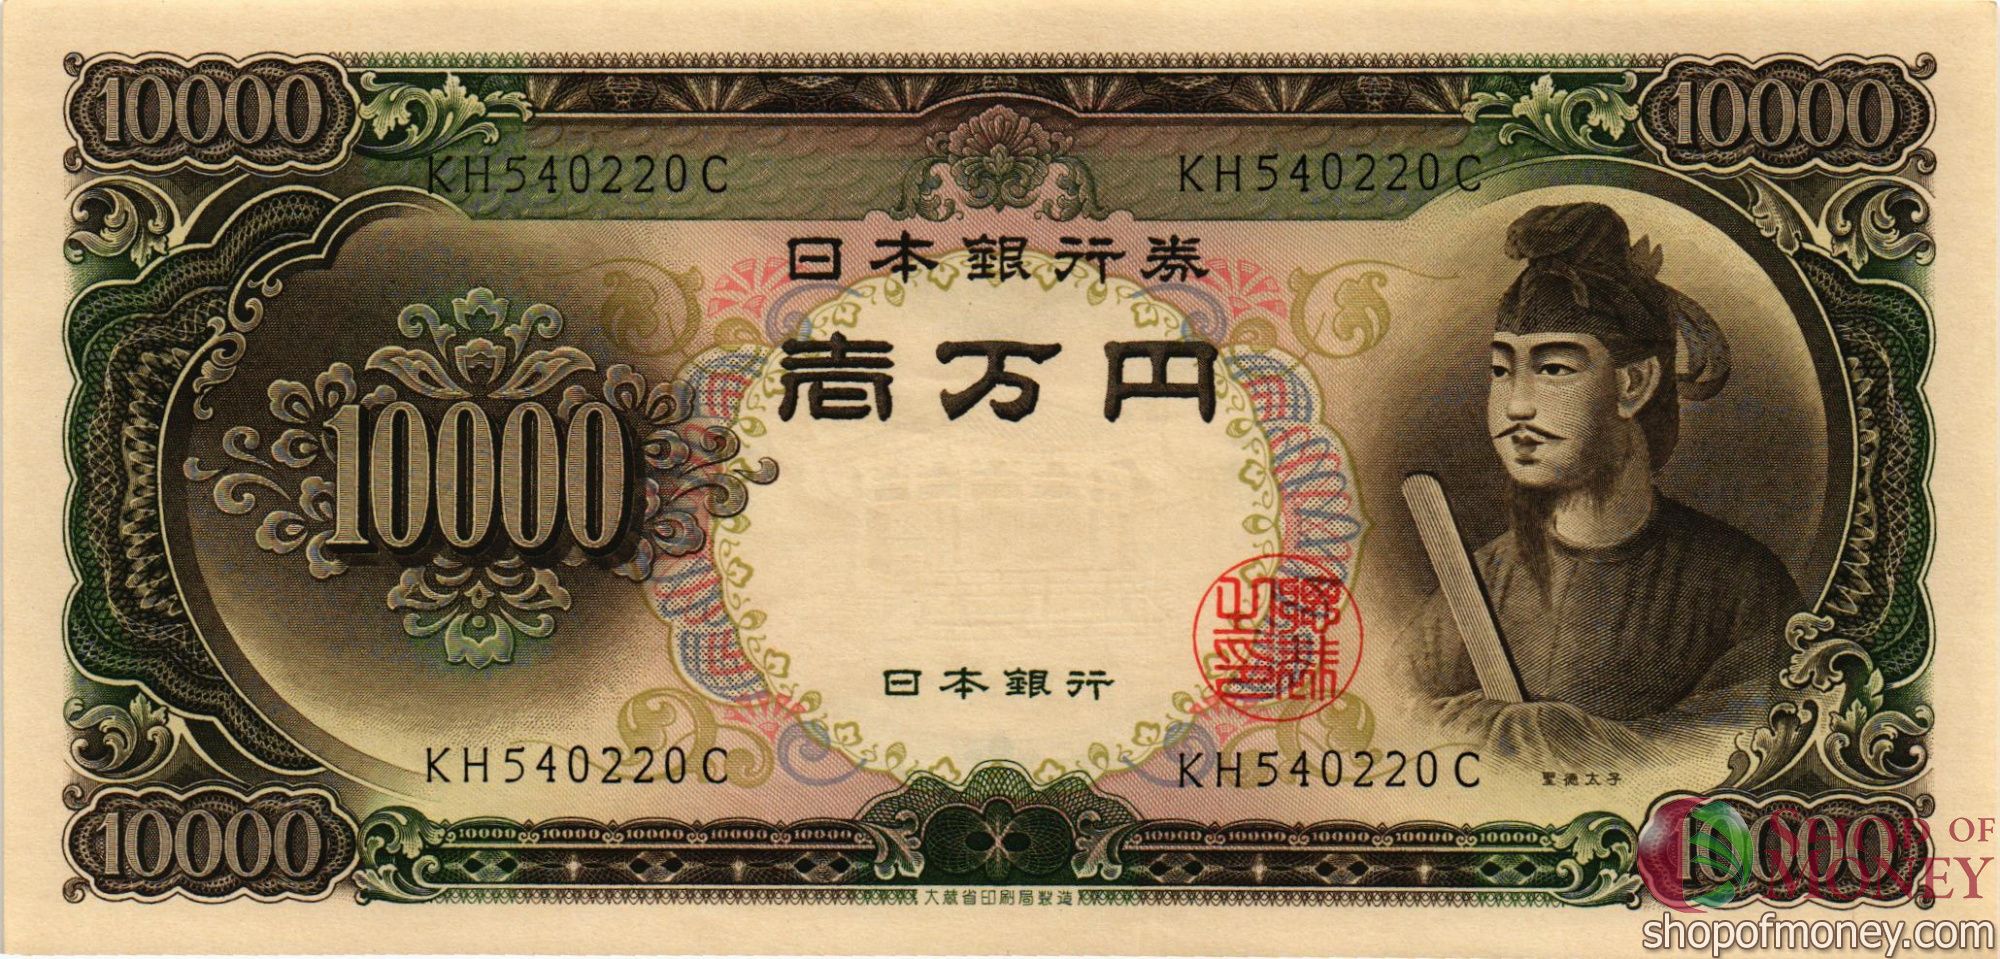 ЯПОНИЯ 10000 ЙЕН